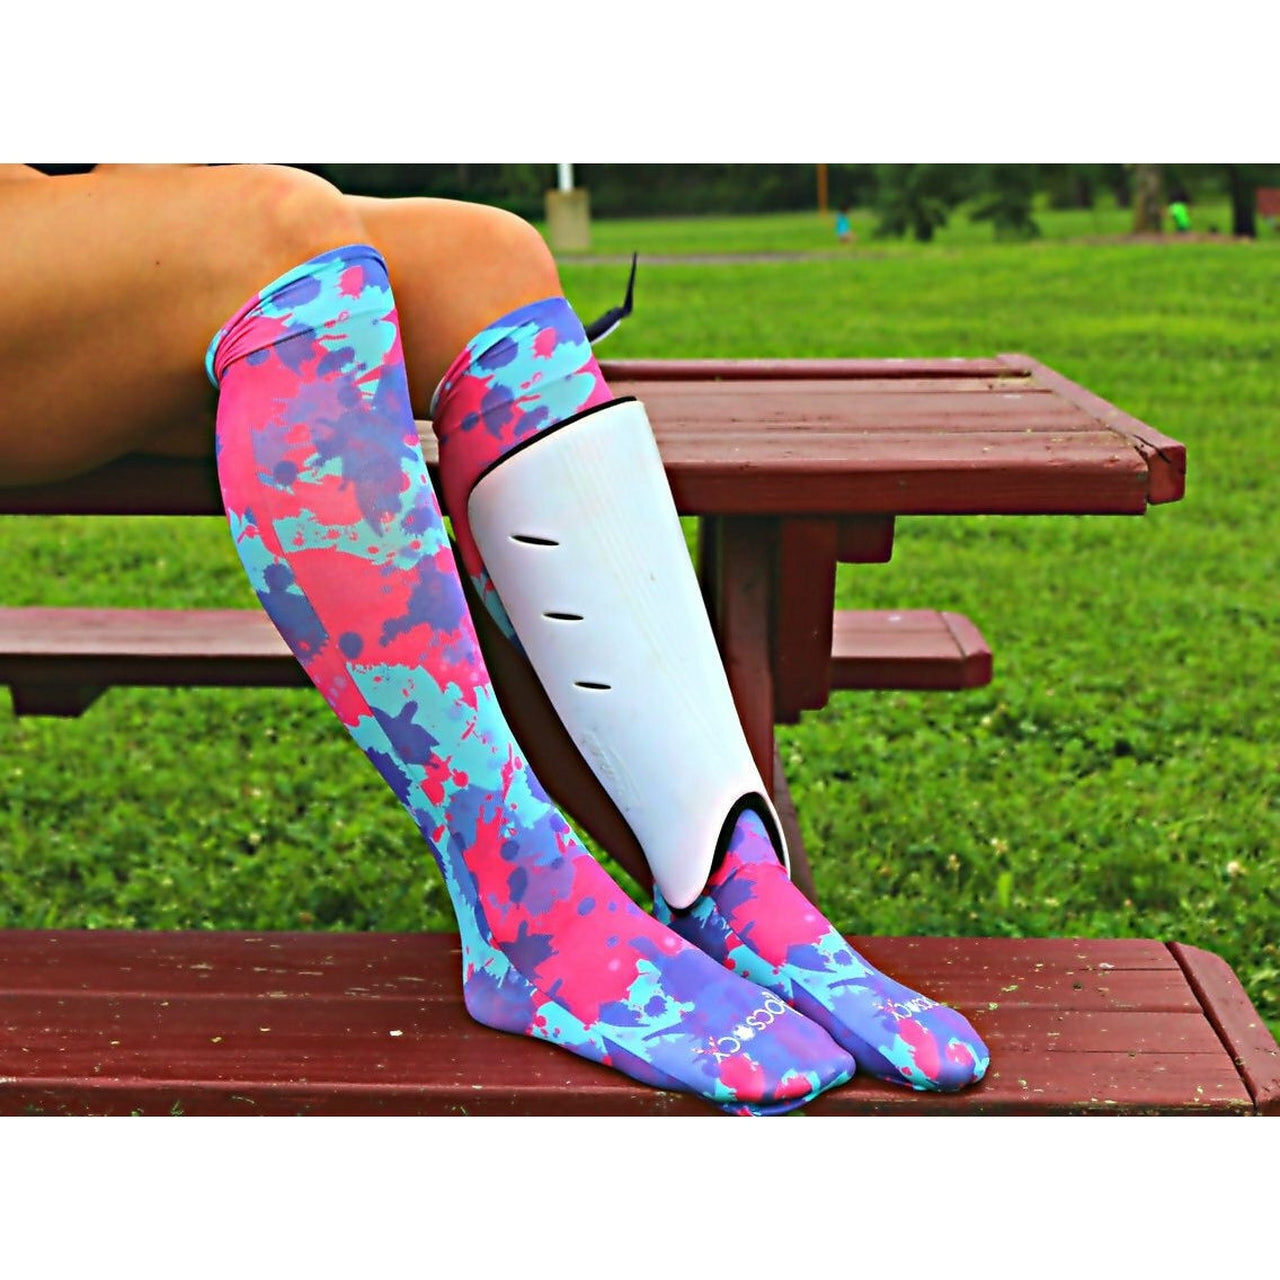 Hocsocx Splatter Print Performance Shin Guard Rash Liner Sport Socks.  Under Socks